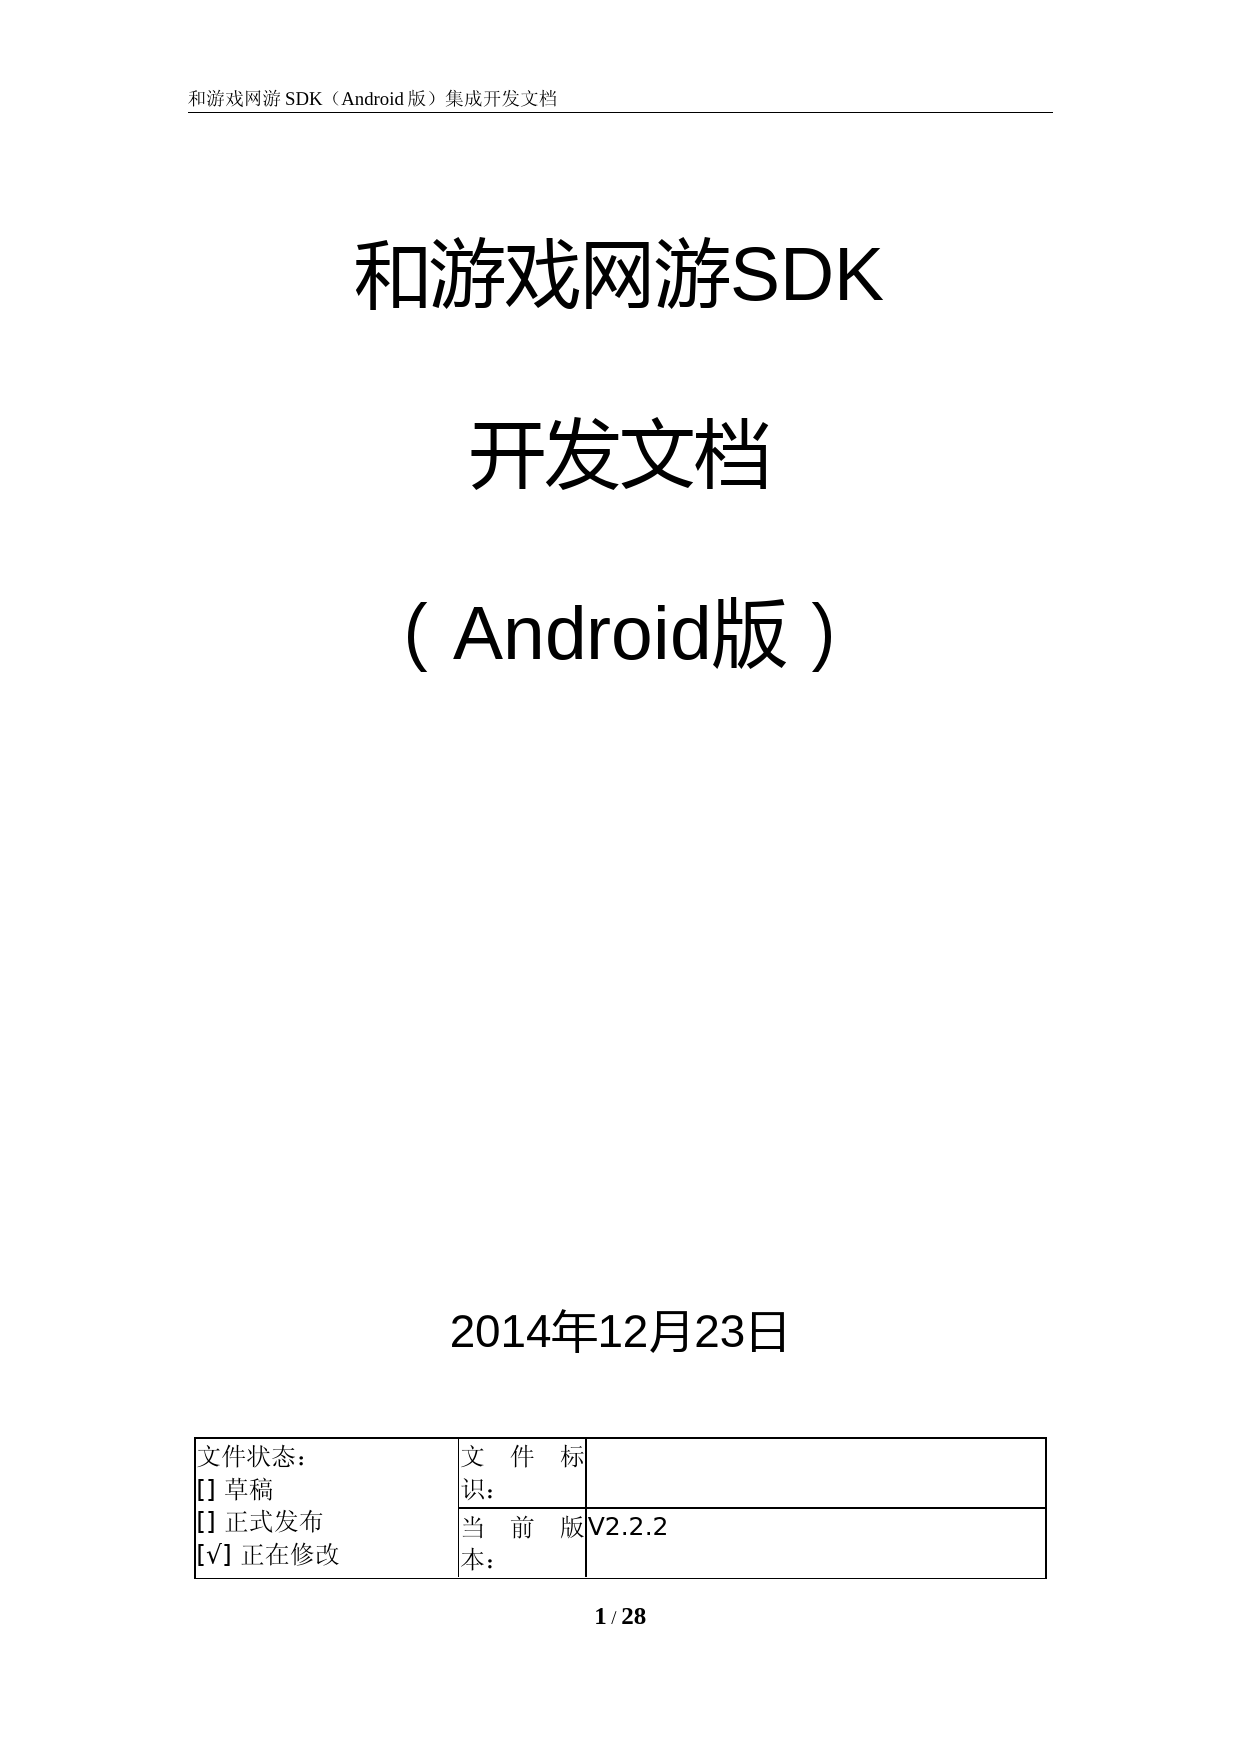 和游戏网游SDK开发文档(Android版)